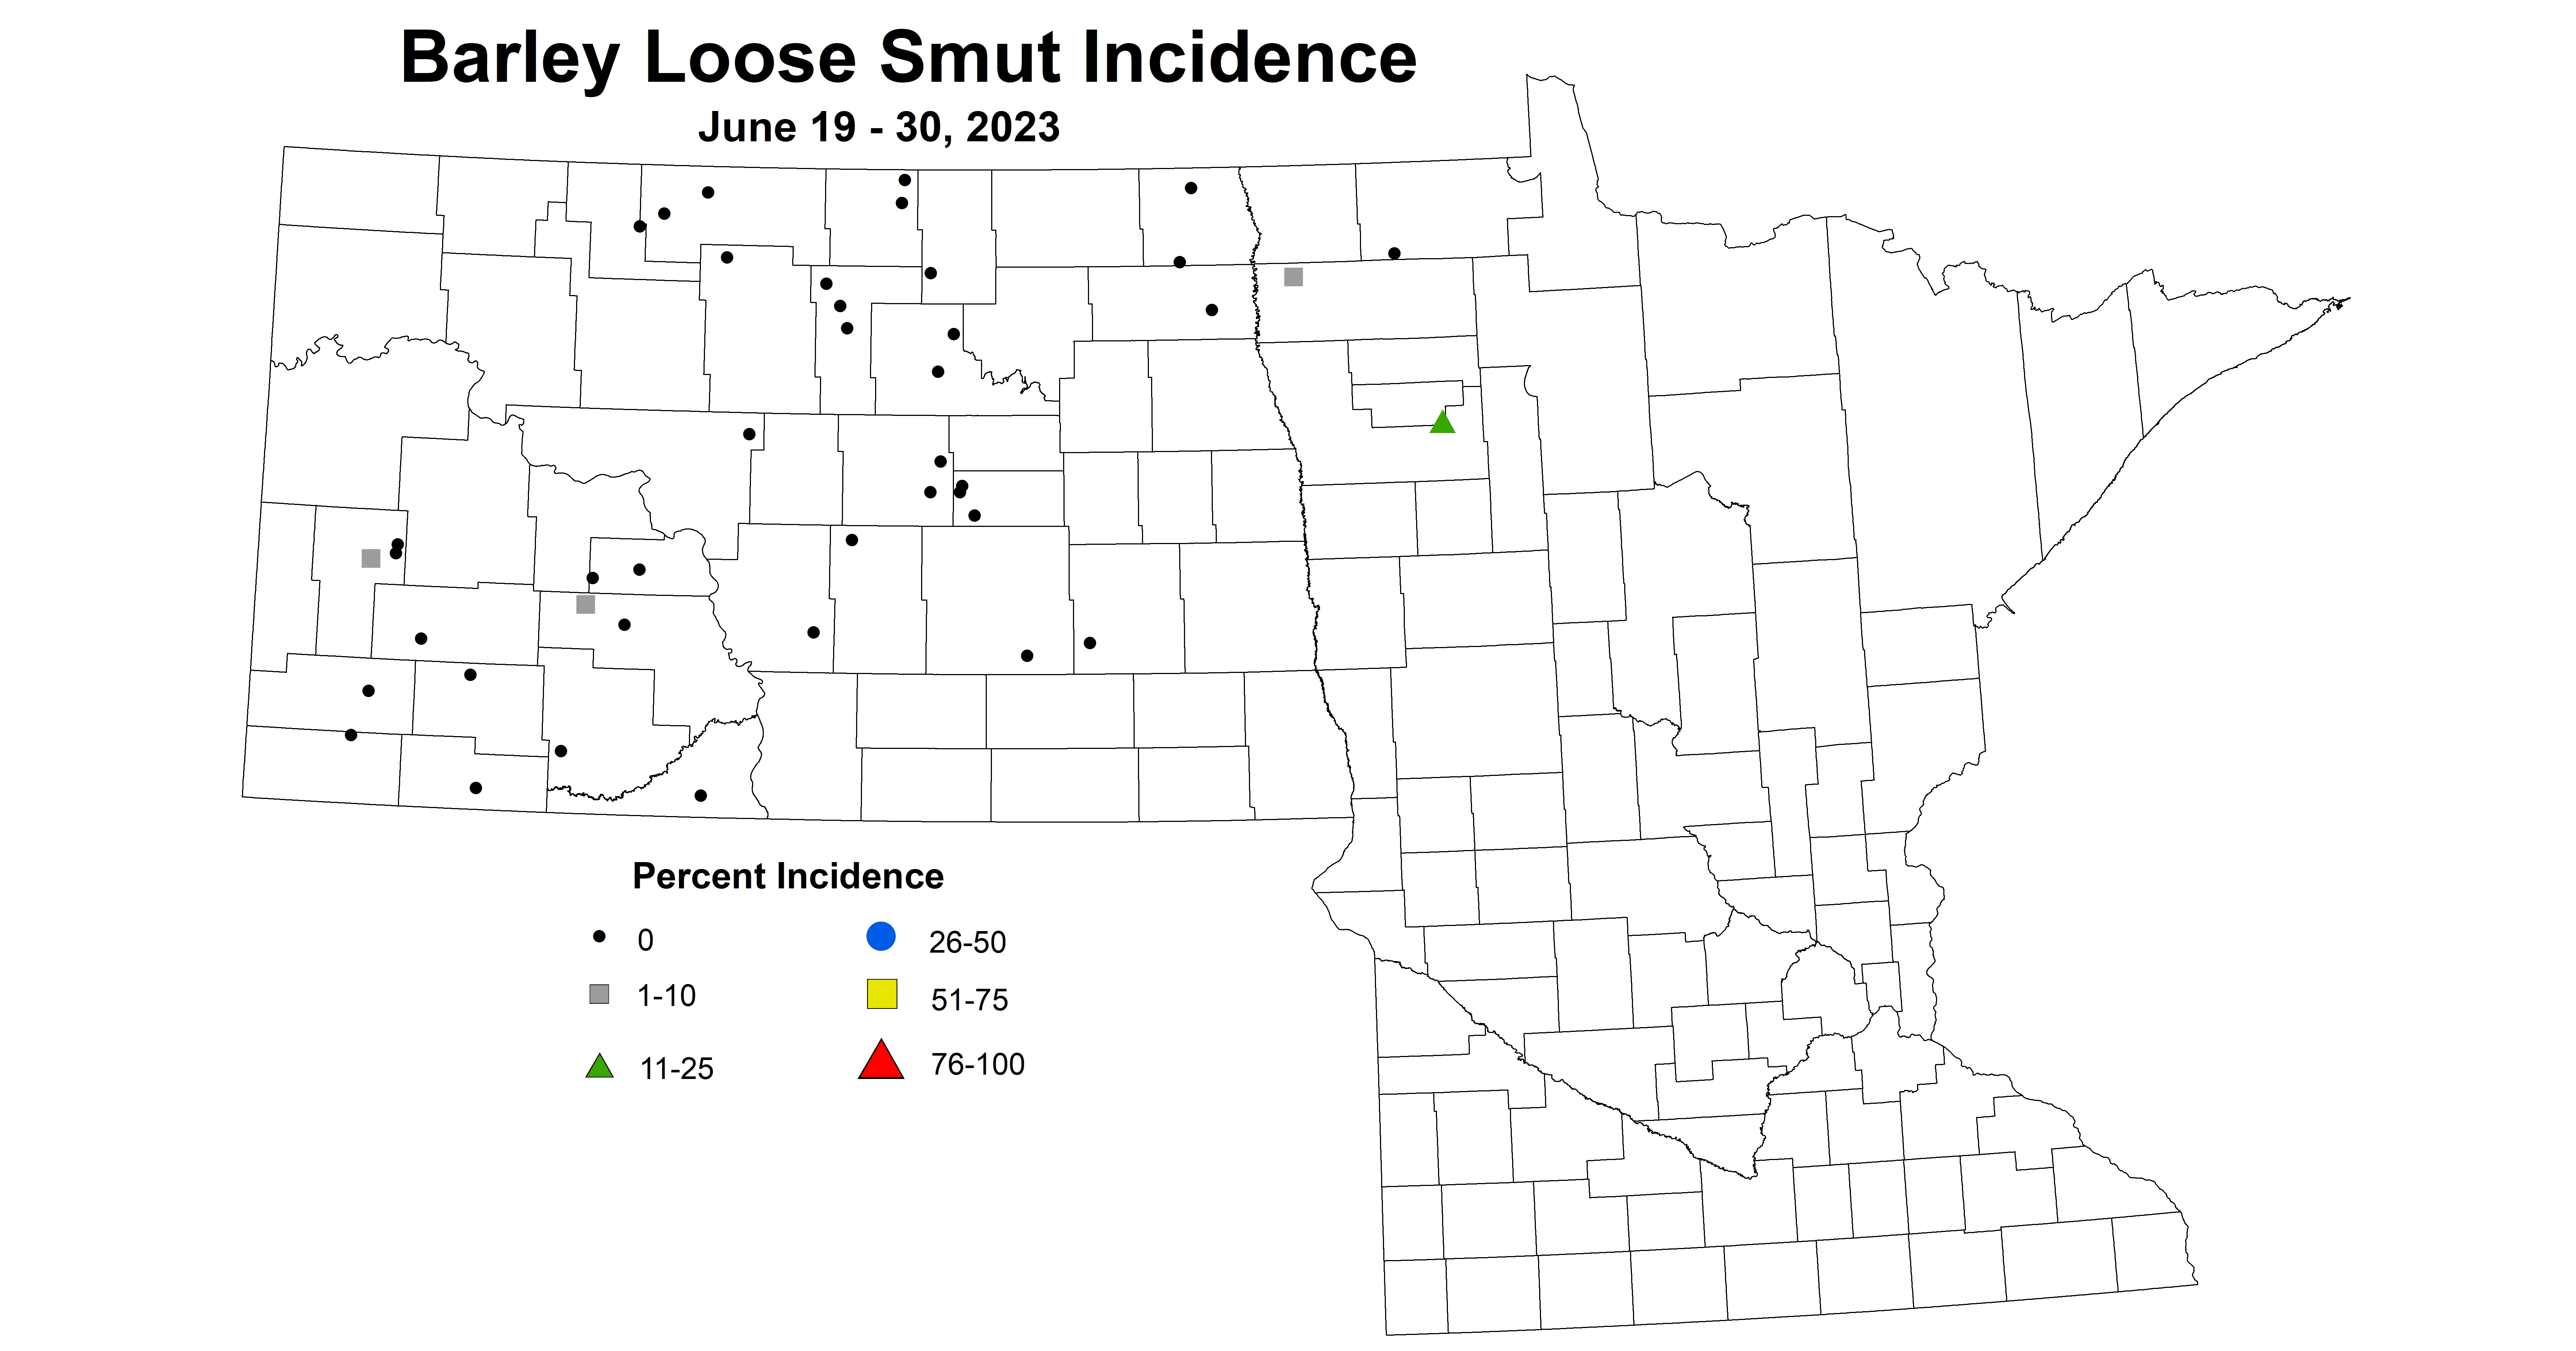 barley loose smut incidence June 19-30 2023